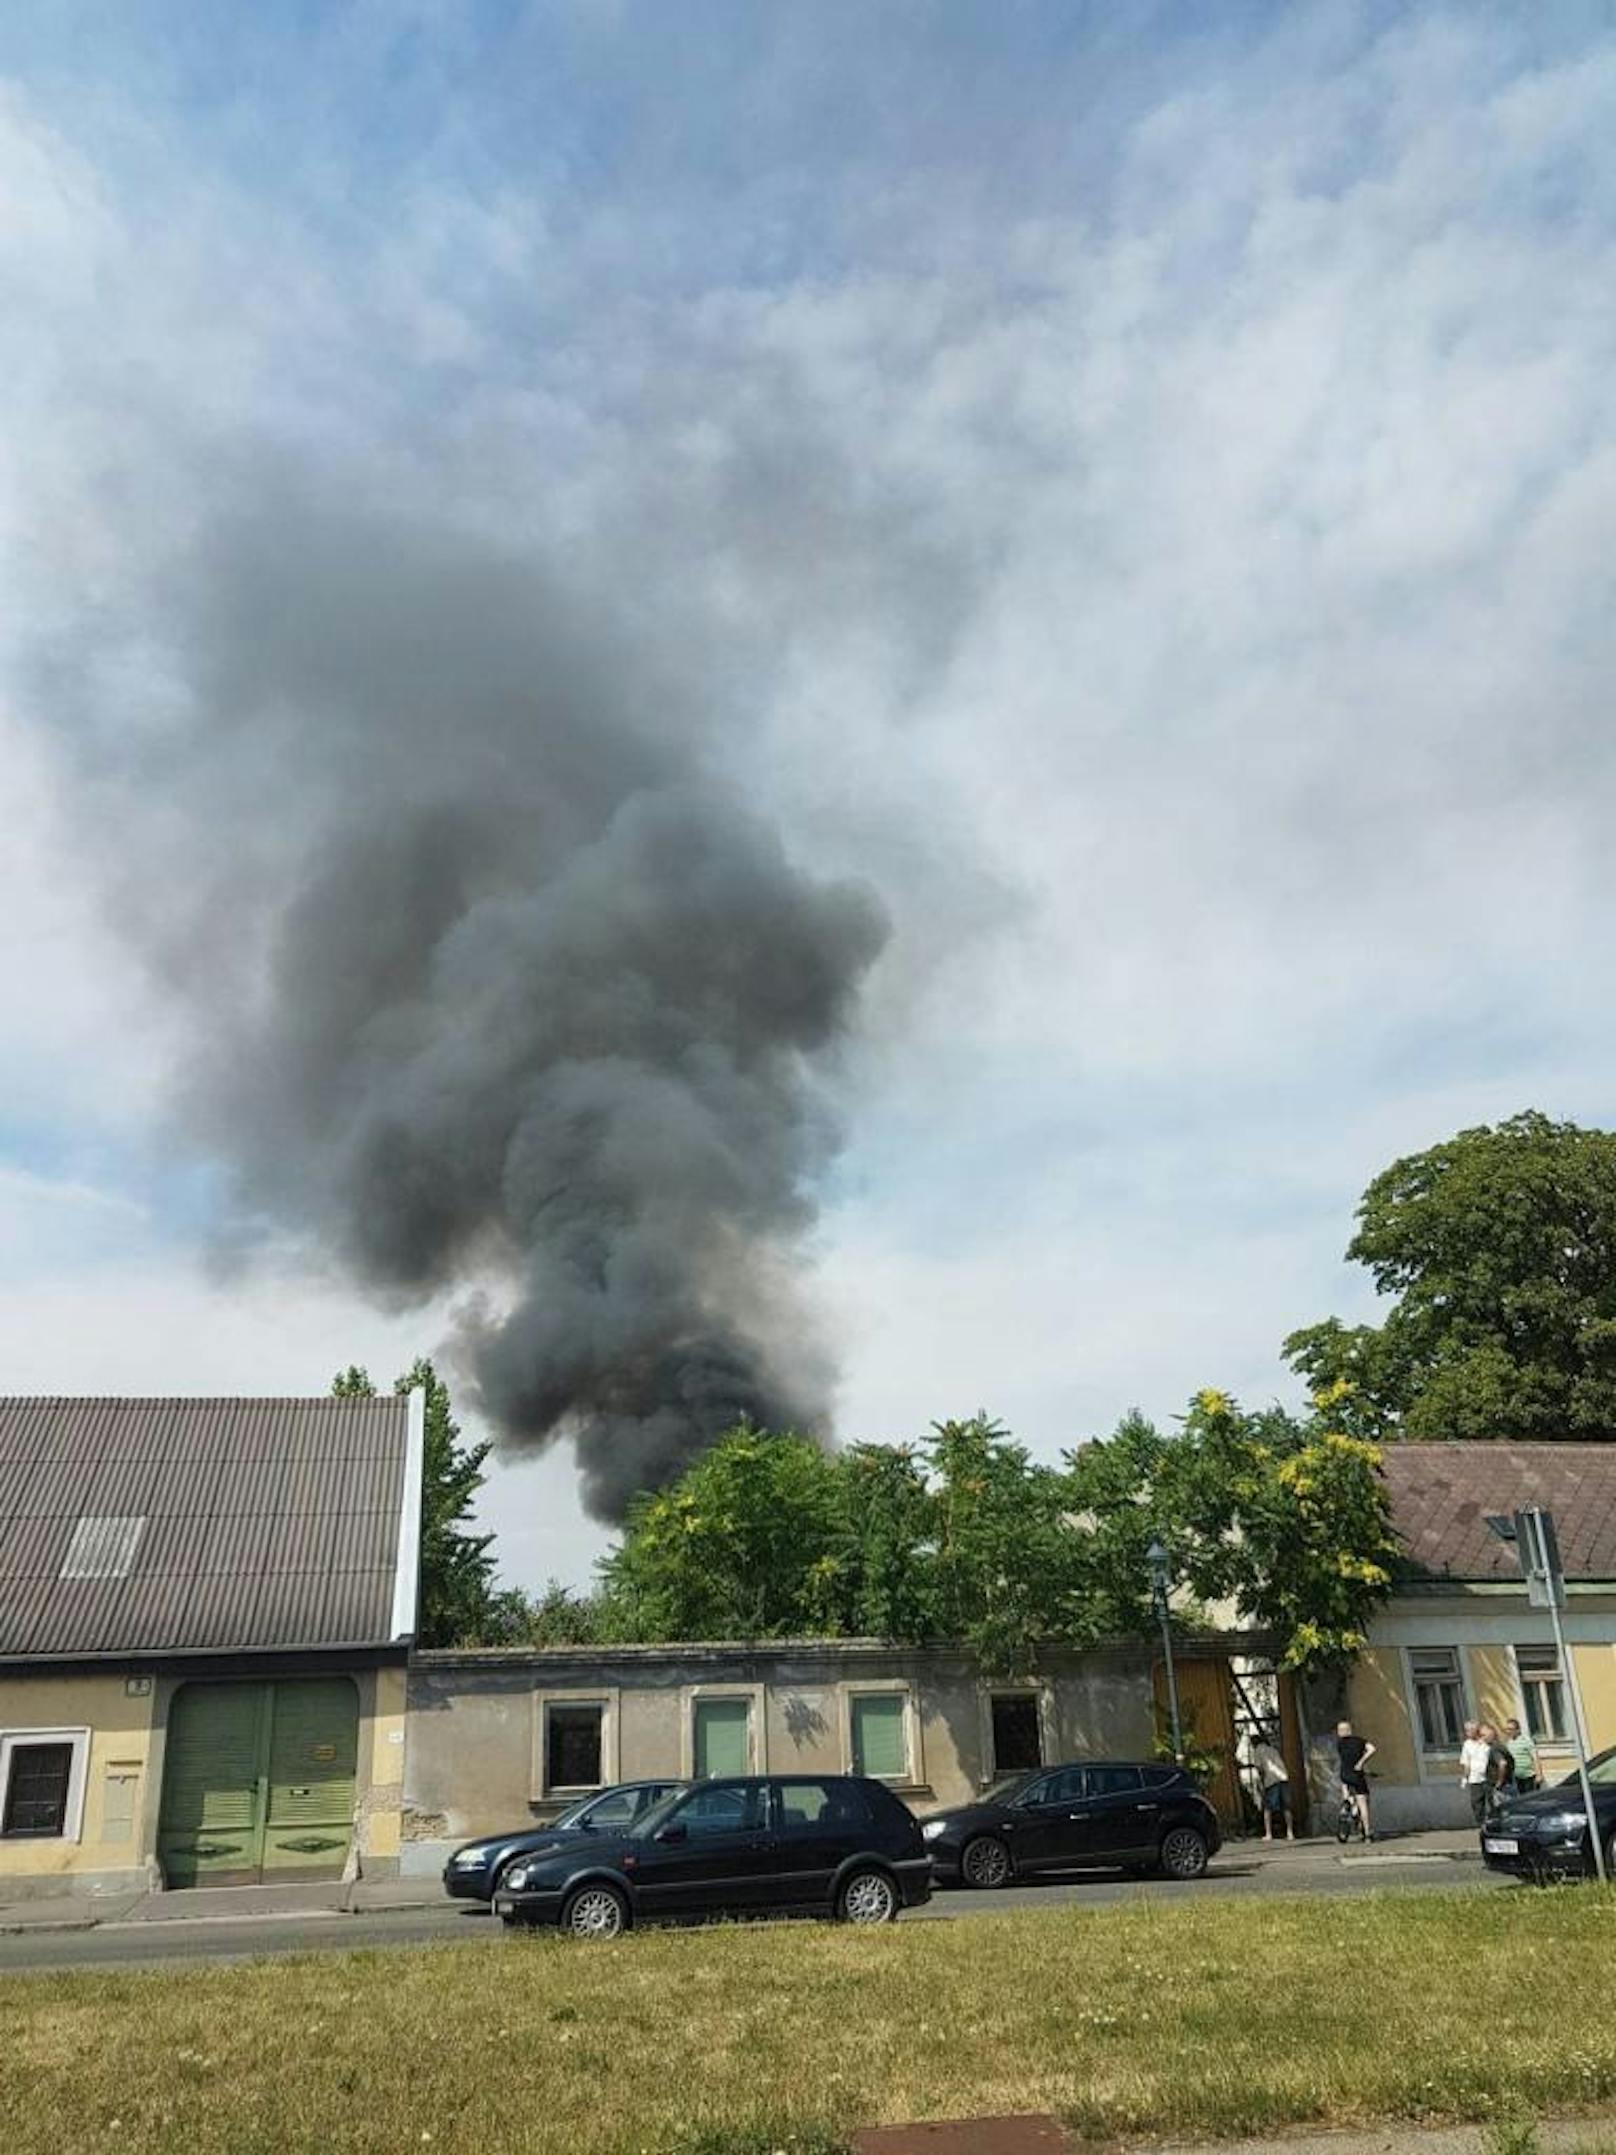 Freitagnachmittag. In Wien-Leopoldau fing ein Wohnwagen aus bisher unbekannter Ursache Feuer.